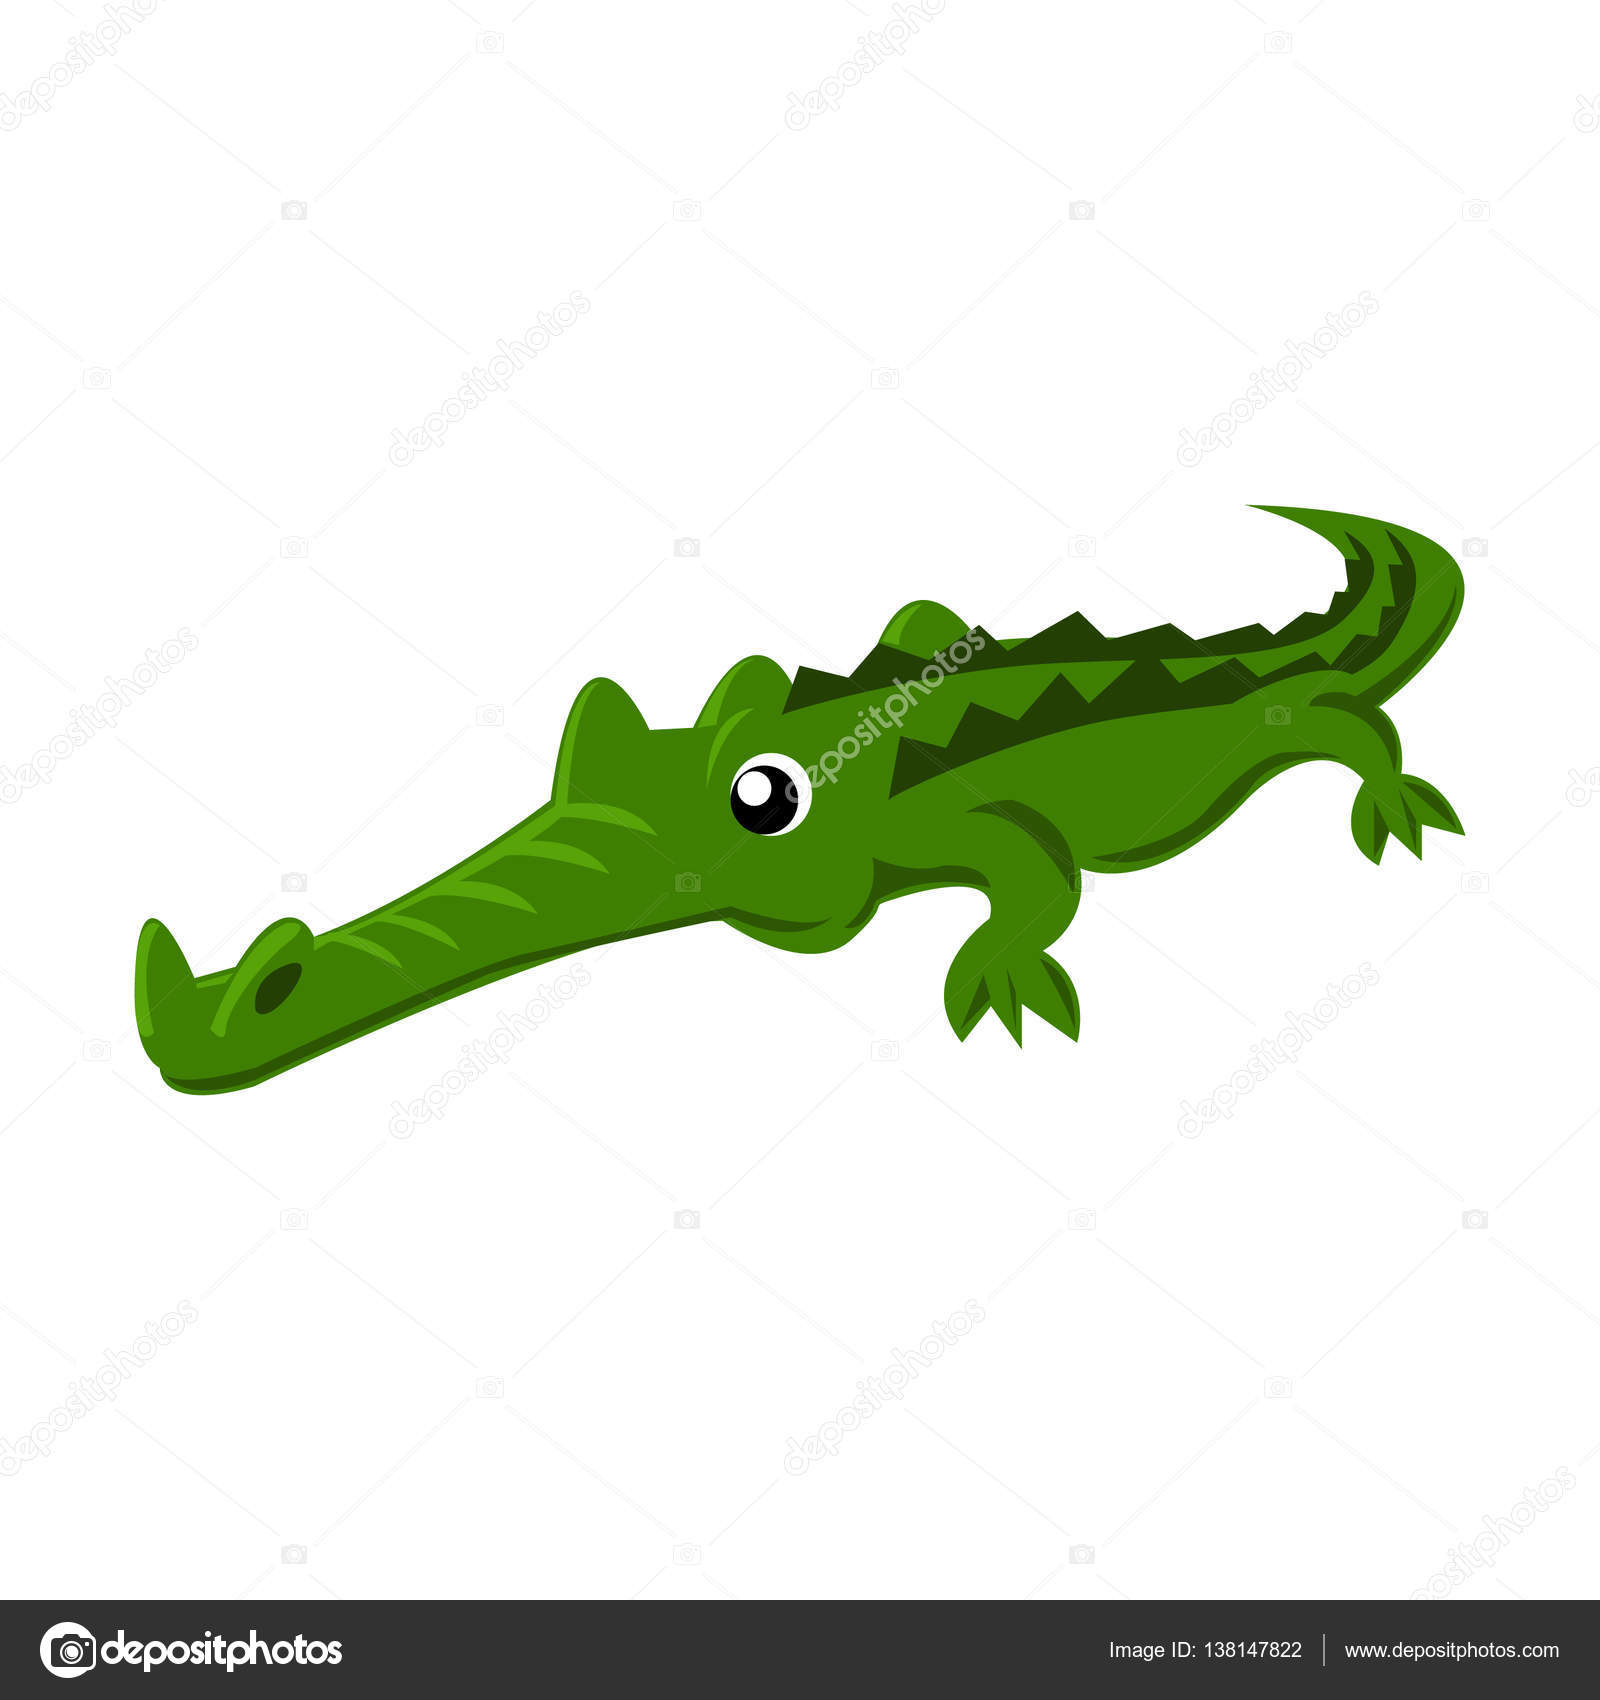 Нарисуй крокодила тест: основы интерпретации и опыт применения — Студопедия